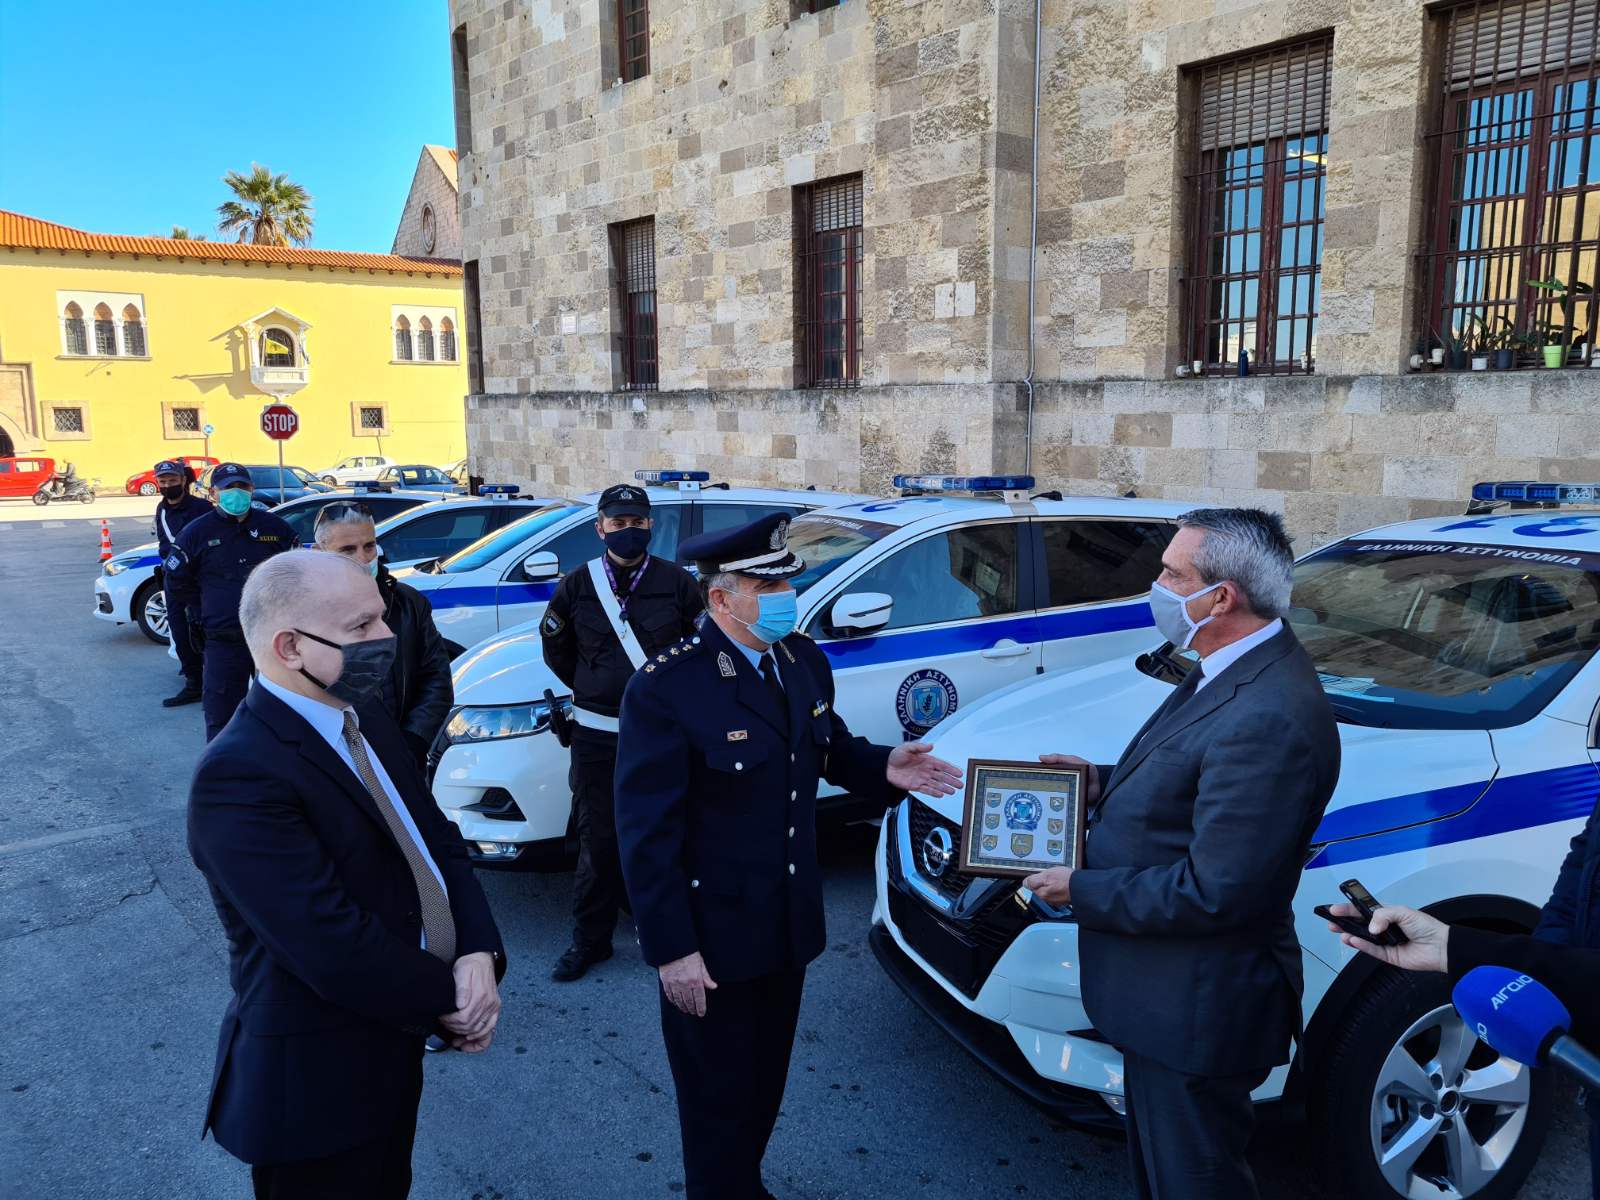 Με δέκα νέα οχήματα ενισχύθηκε η Αστυνομική Διεύθυνση Ρόδου μέσα από τους ευρωπαϊκούς πόρους της Περιφέρειας